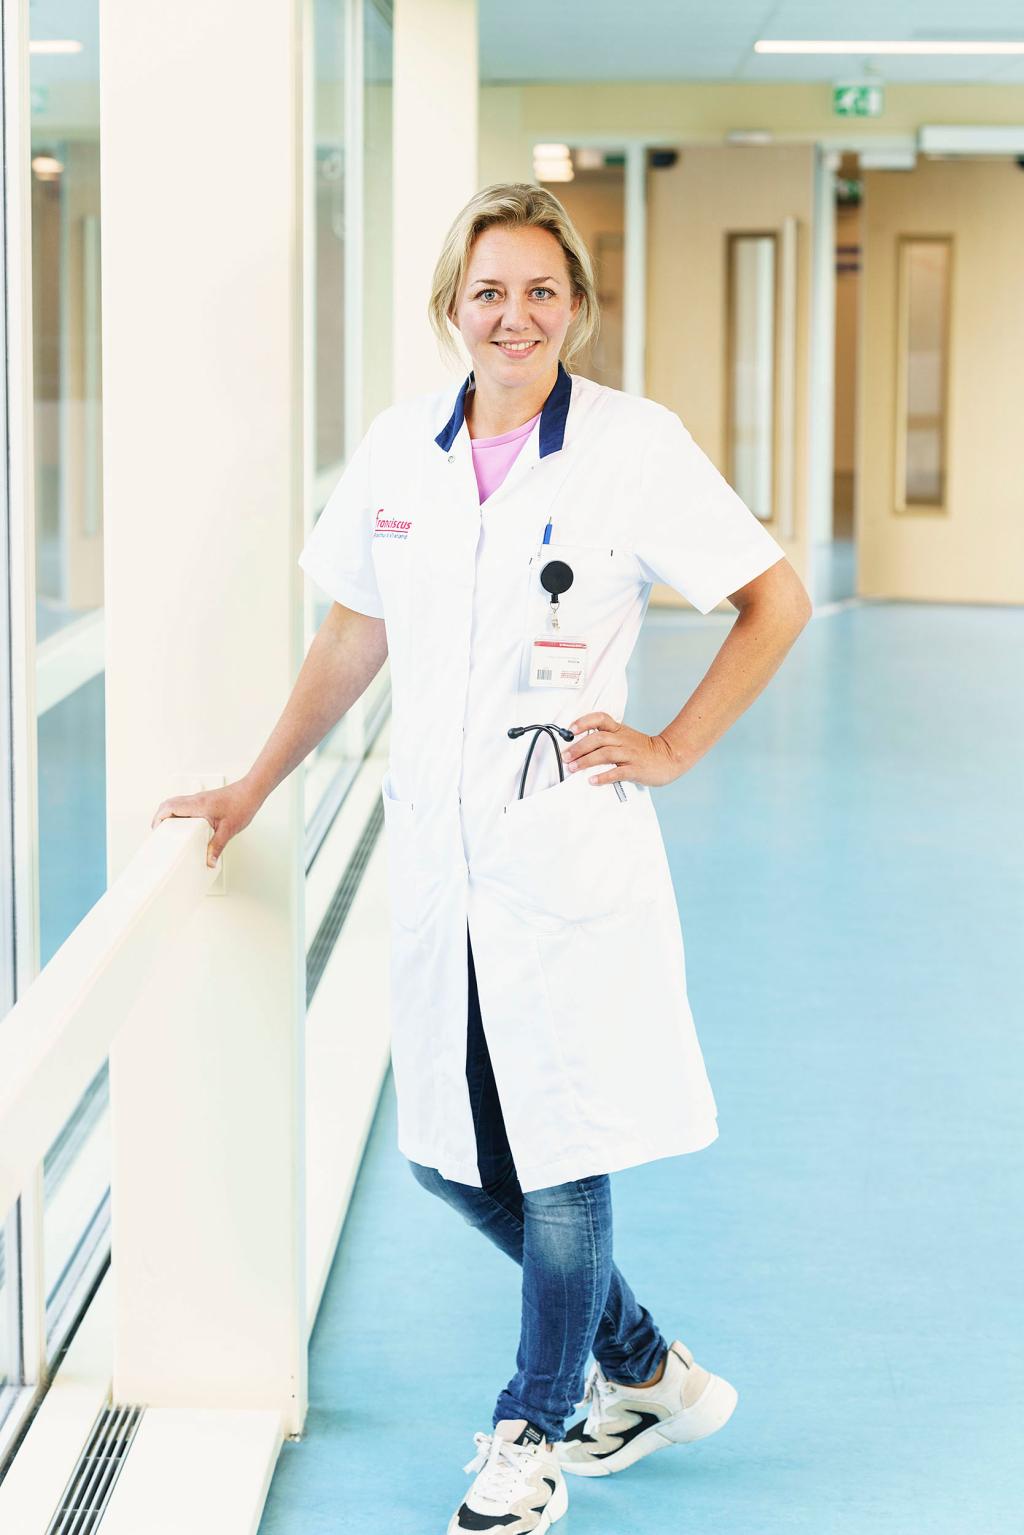 Verpleegkundig specialist Michelle de la Roij